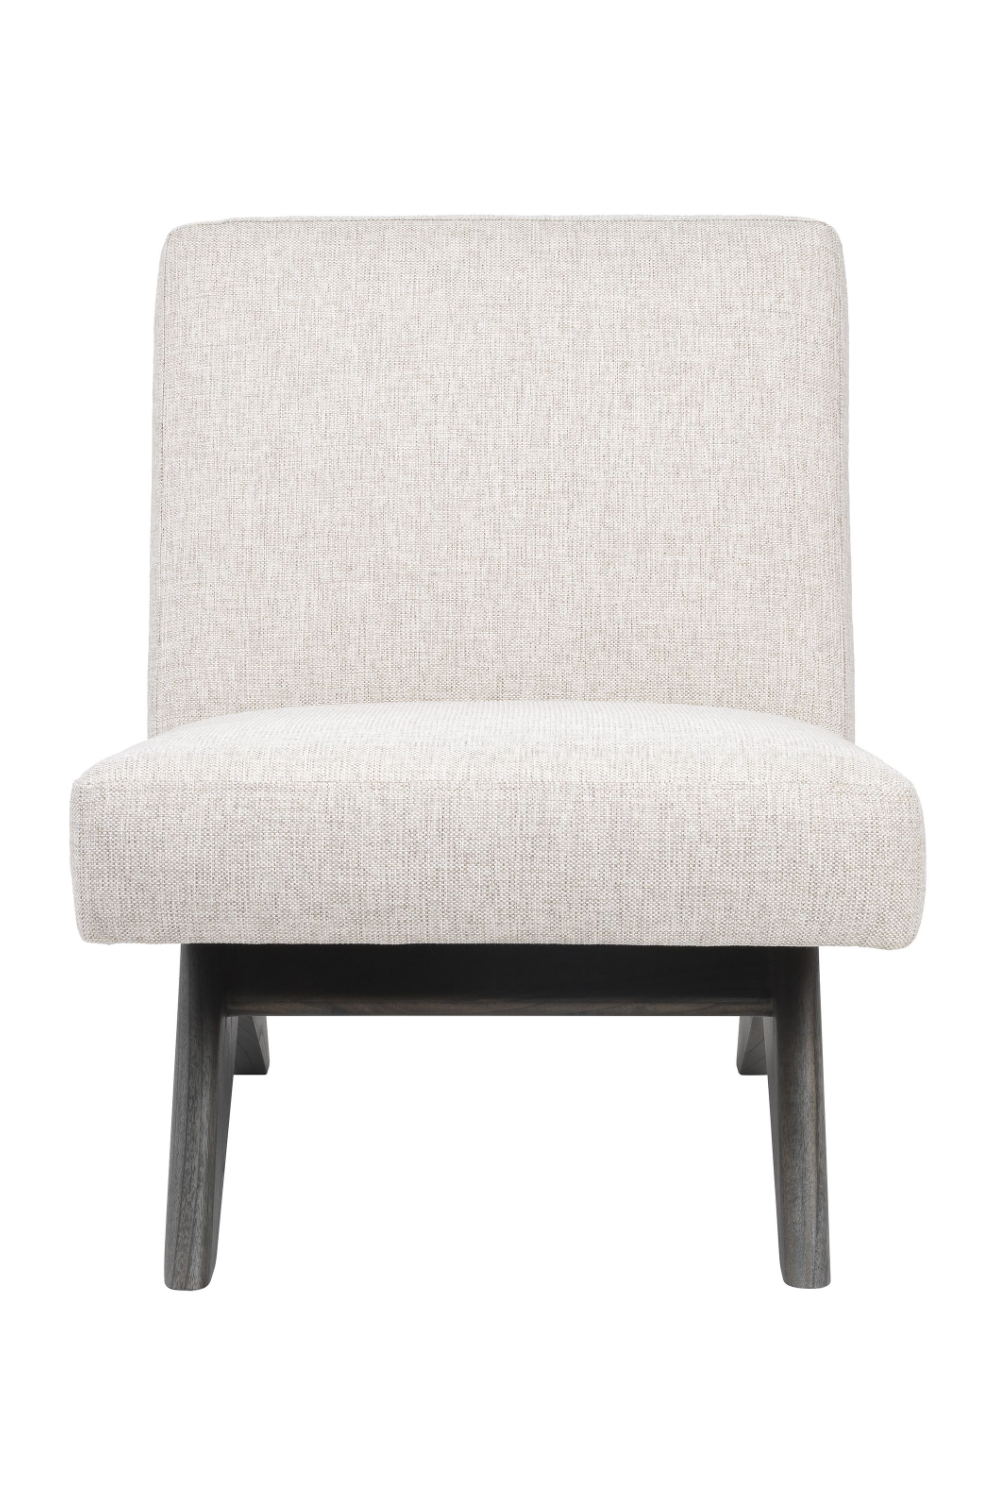 Beige Wooden Accent Chair | Eichholtz Erudit | Oroa.com